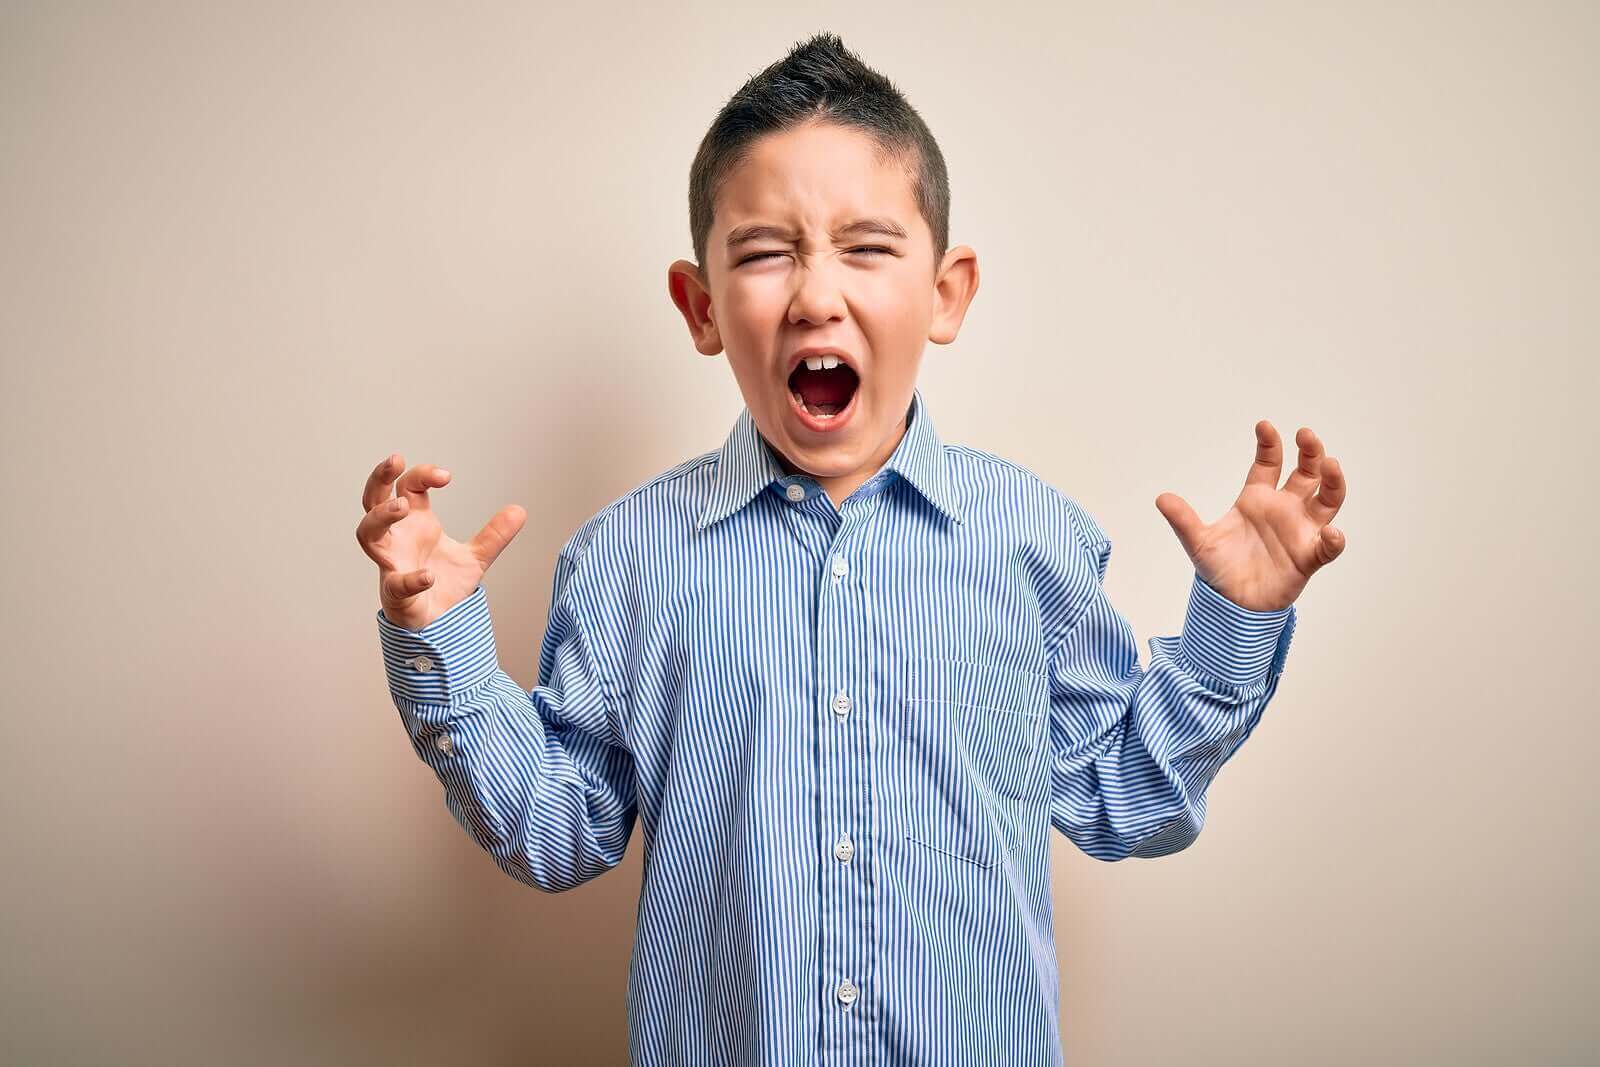 어린이 분노 조절에 유용한 6가지 전략